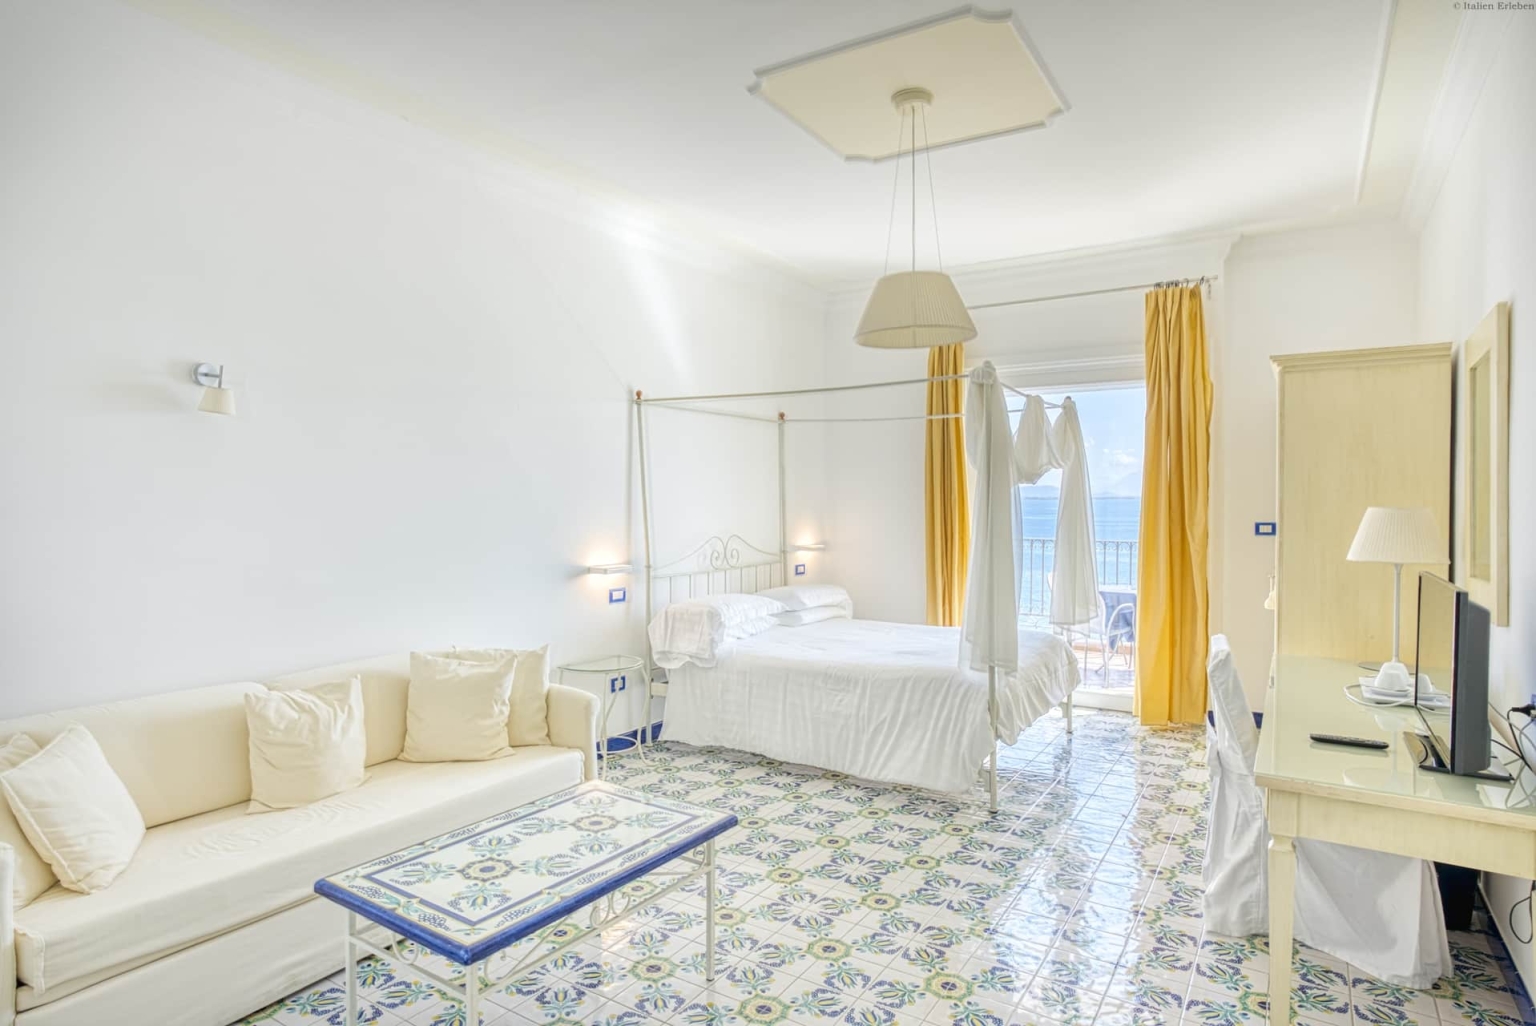 Kampanien Hotel Cetus Cetara Amalfiküste direkt am Meer Panoramalage Meerblick Zimmer Balkon